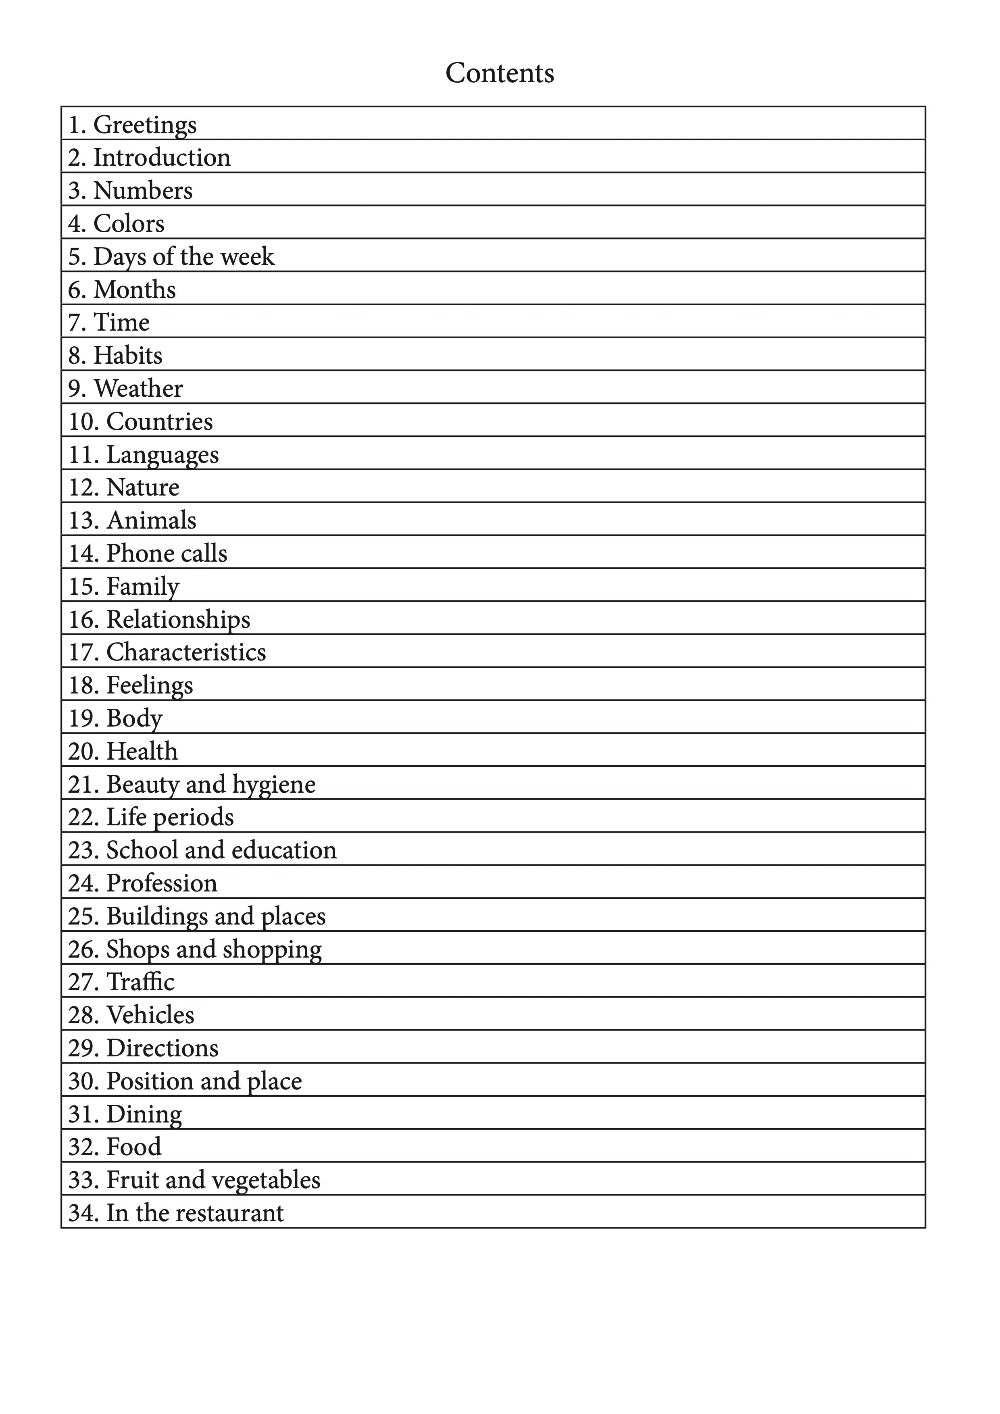 Kapingamarangi language learning notebook contents page 1